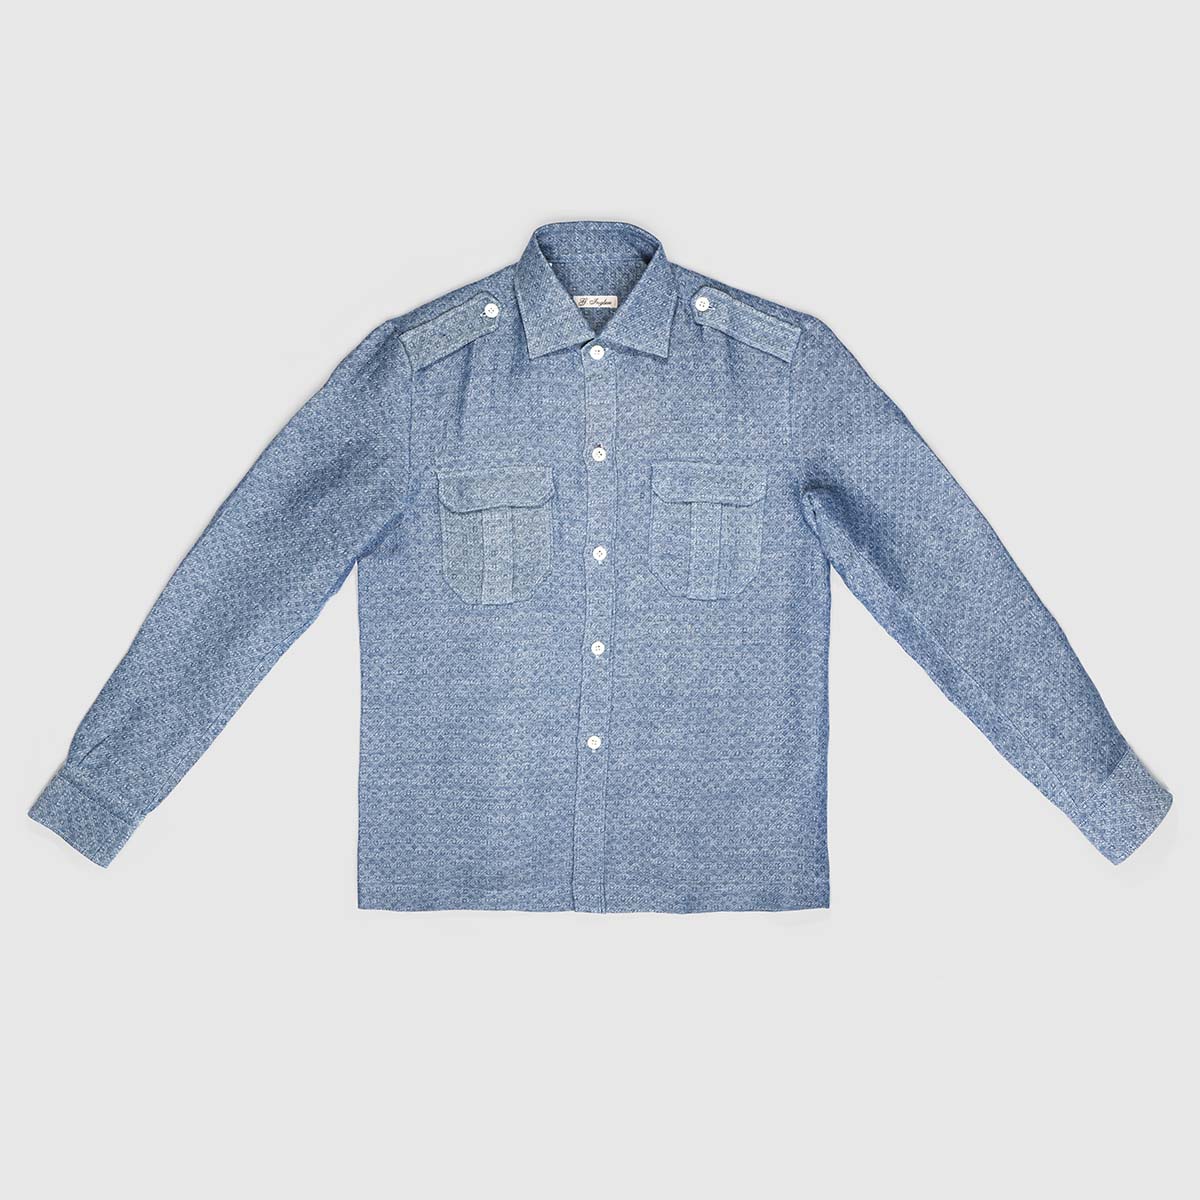 Jacquard Linen Overshirt in Light Blue G. Inglese on sale 2022